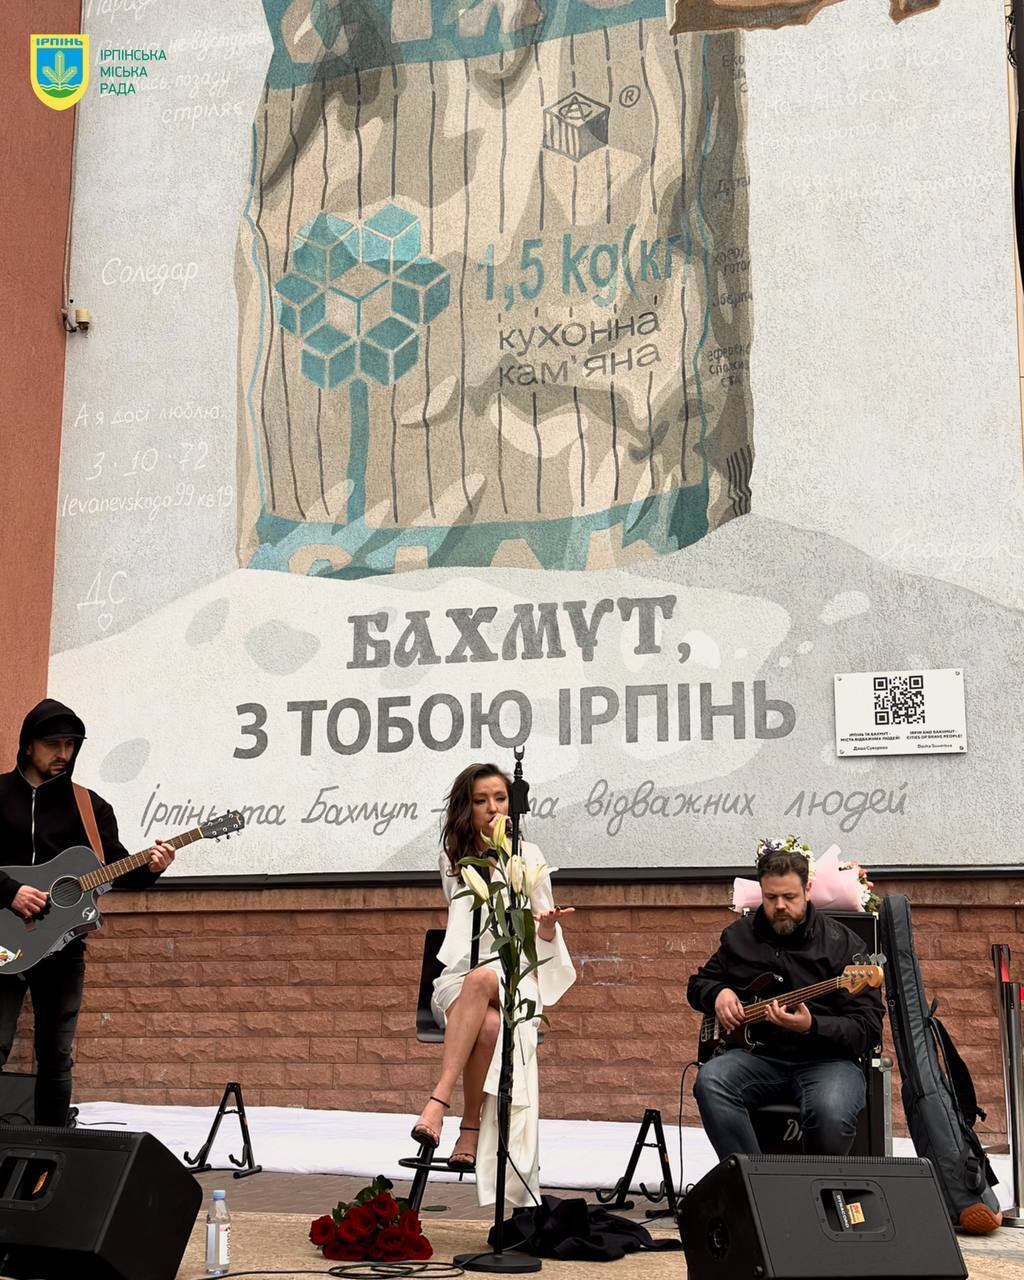 В Киевской области появился новый мурал, посвященный Бахмуту и Ирпеню. Фото